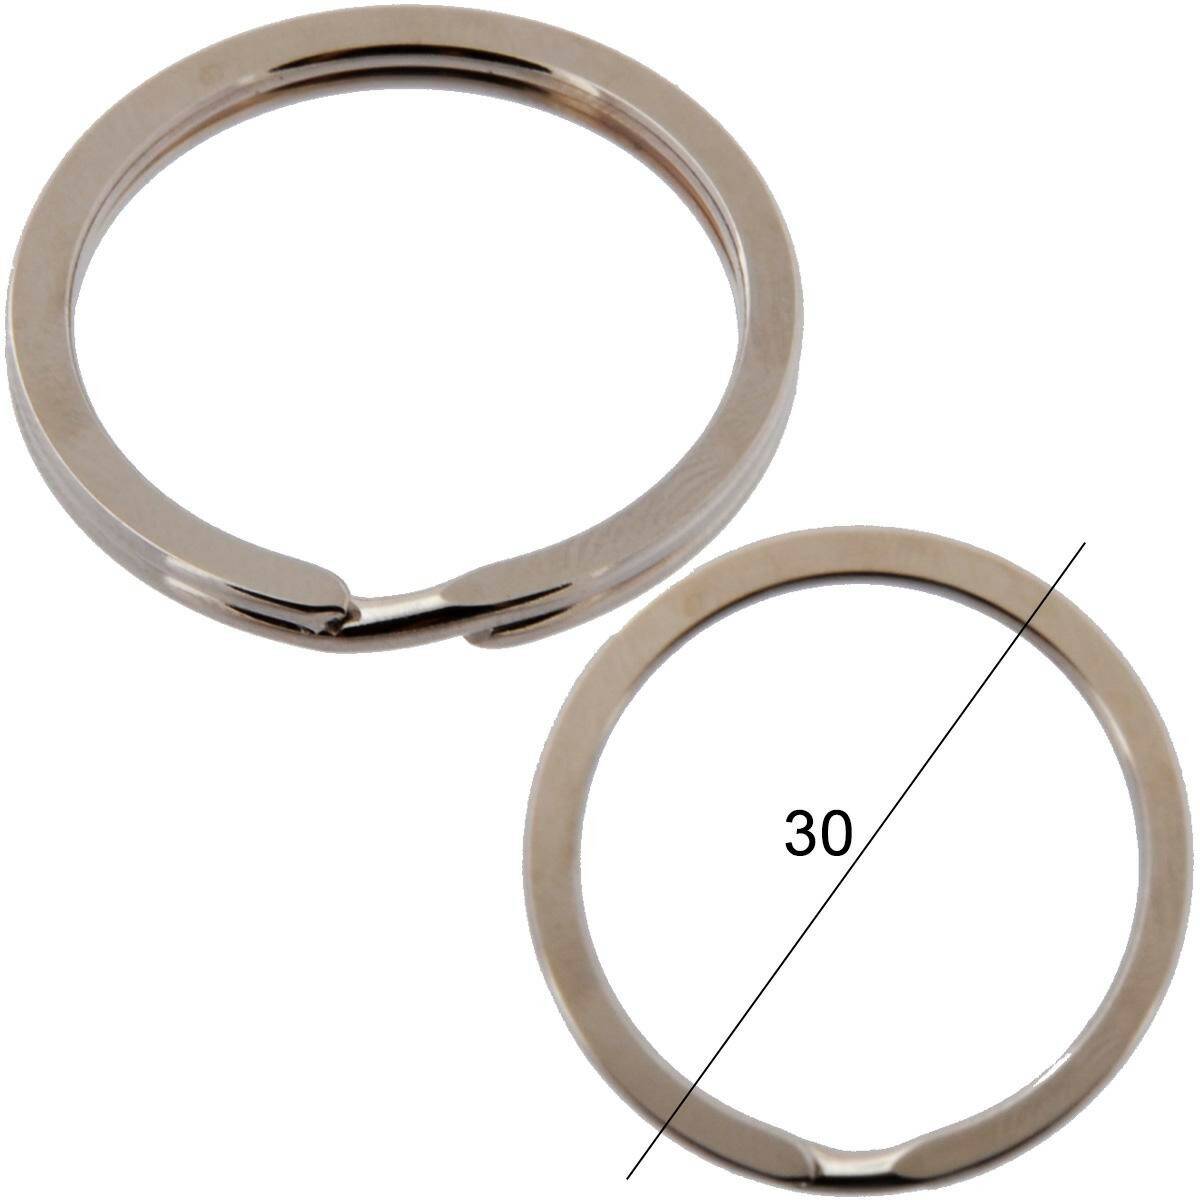 Key rings for keys flat diameter 30mm